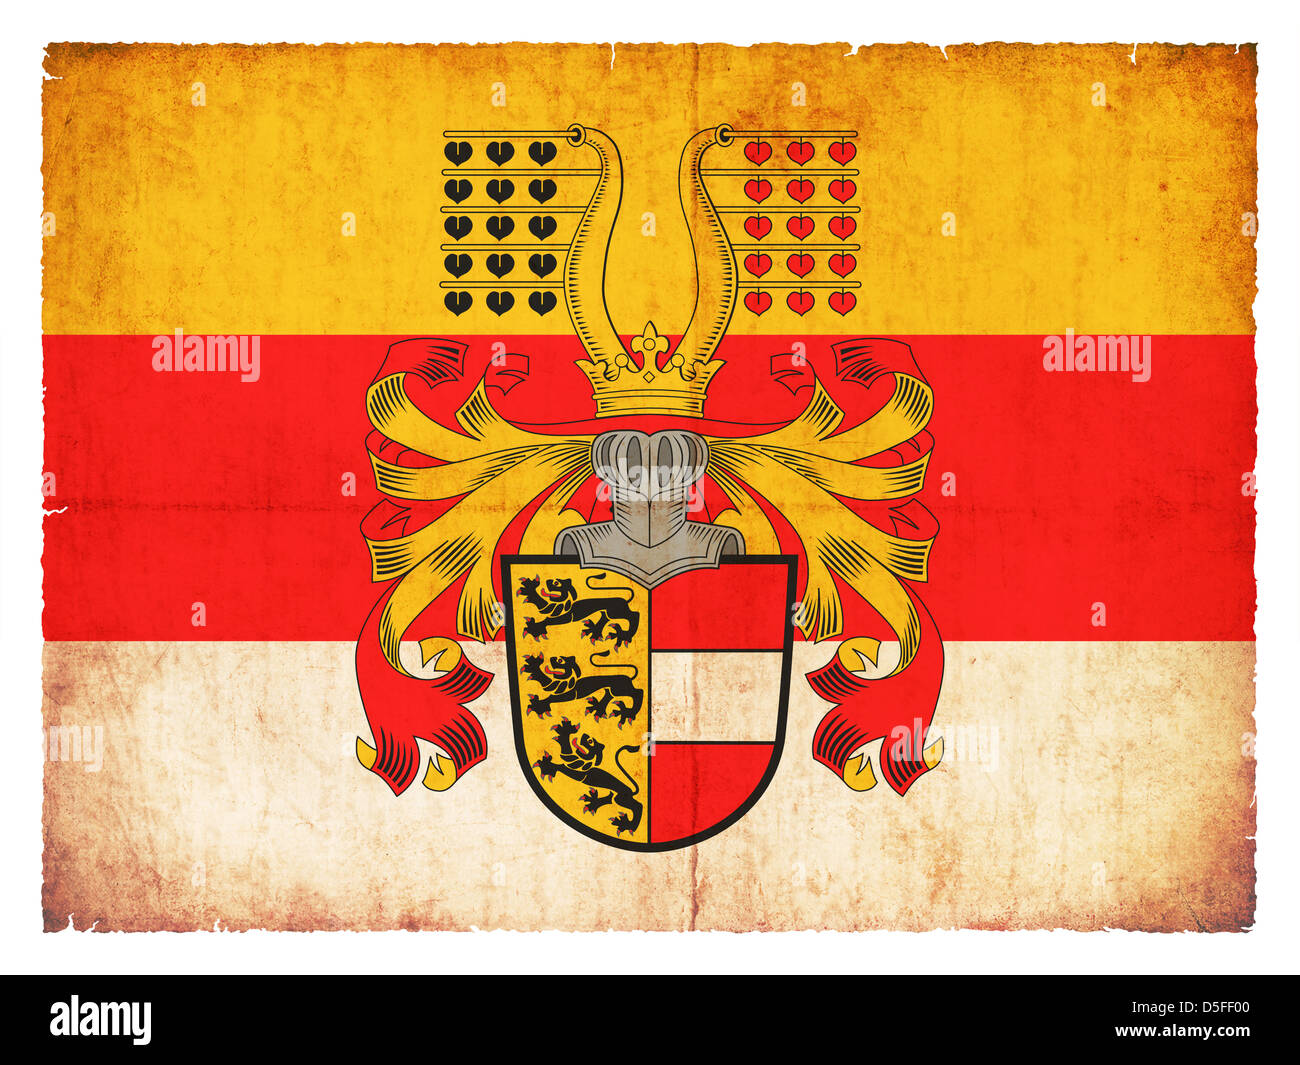 Bandiera della provincia austriaca Carinzia creato in stile grunge Foto Stock